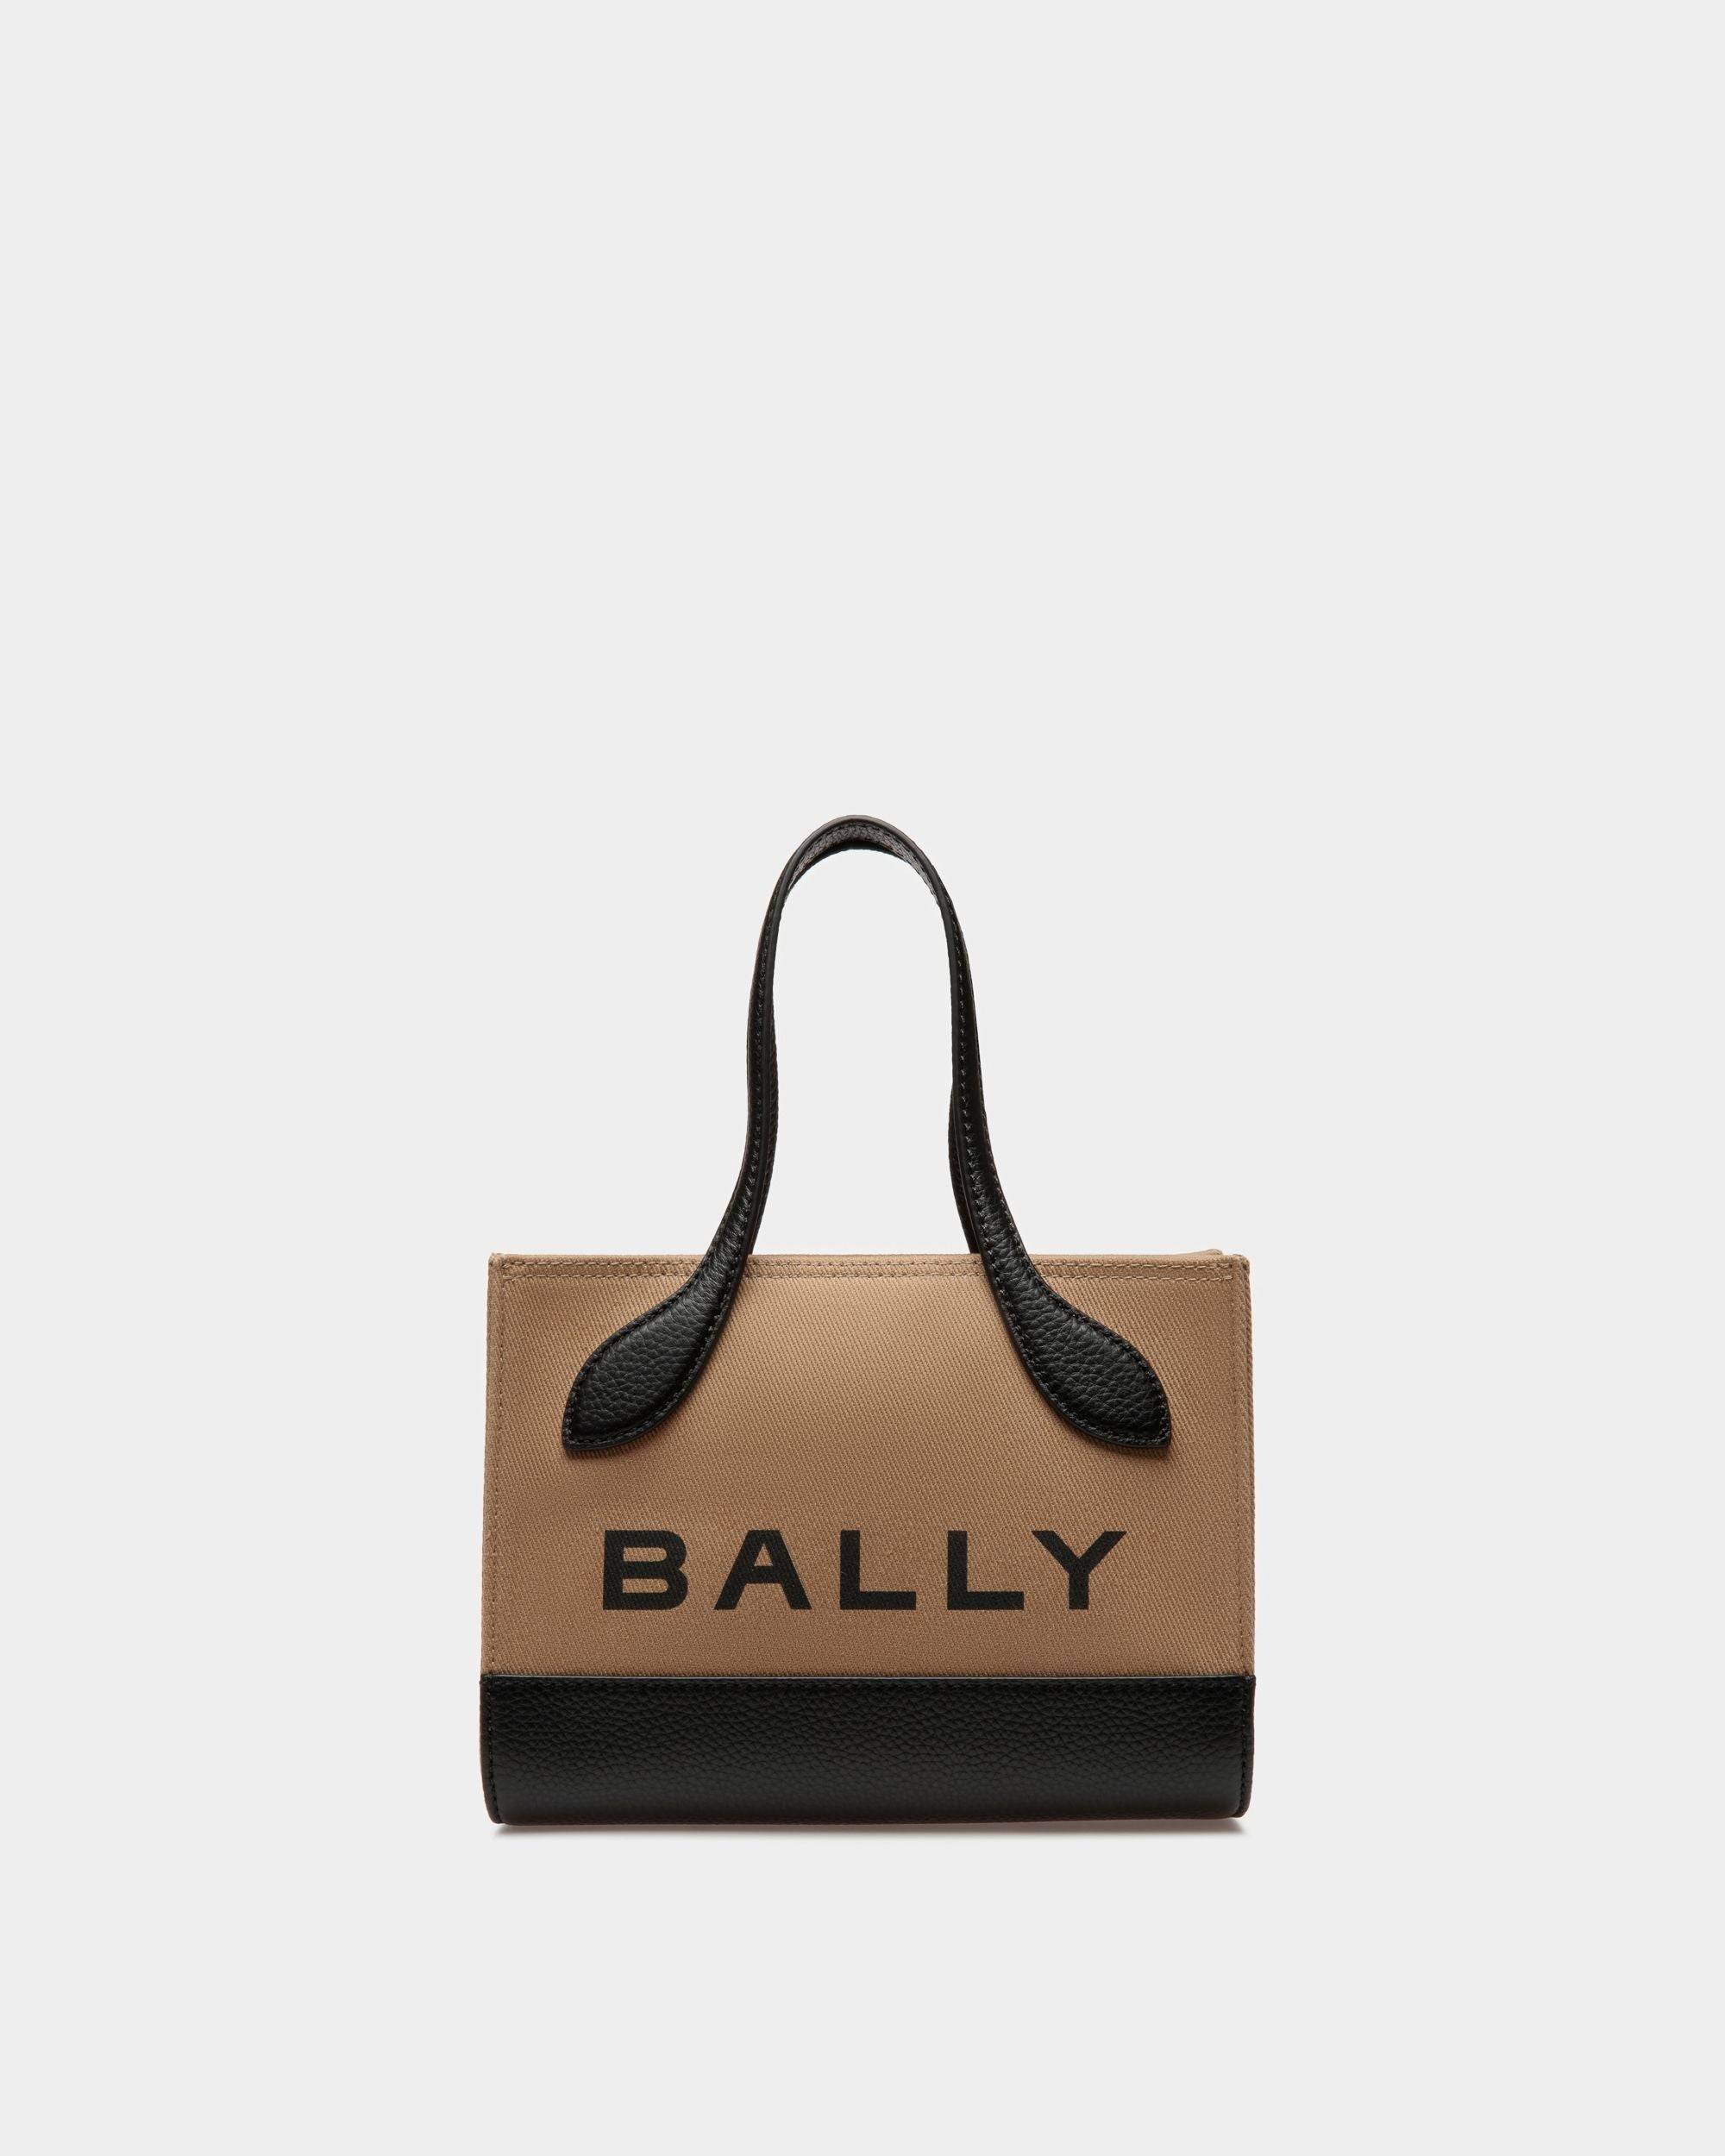 Bar Keep On Extra Small | Minibag für Damen | Stoff in Sand und Schwarz | Bally | Still Life Vorderseite